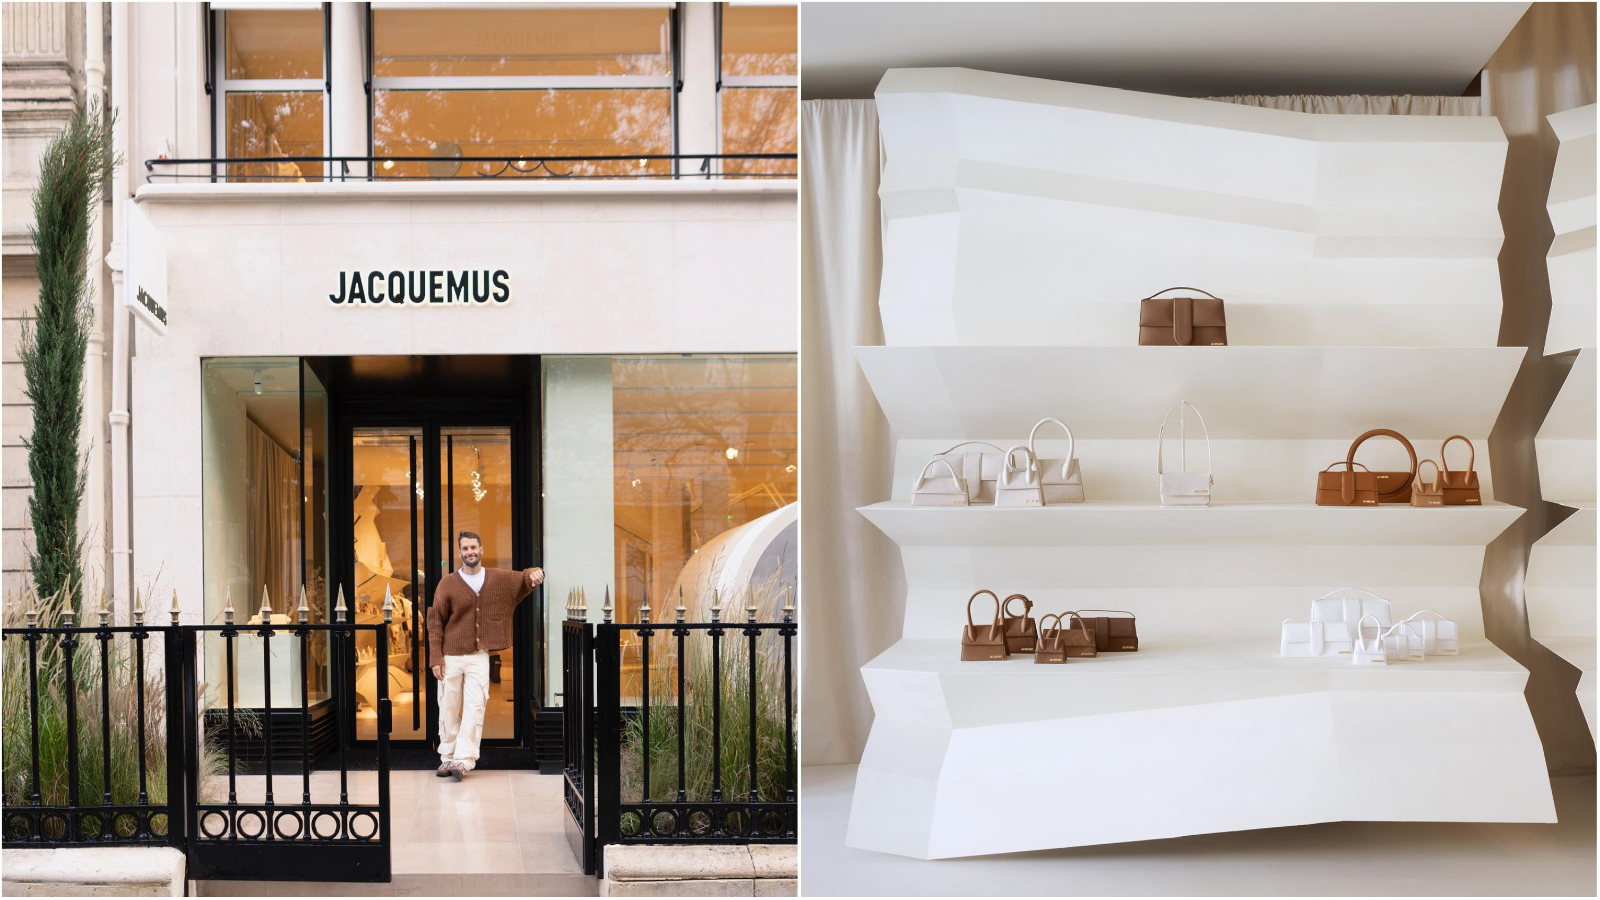 Omiljeni modni brend Jacquemus otvorio je svoju prvu trgovinu